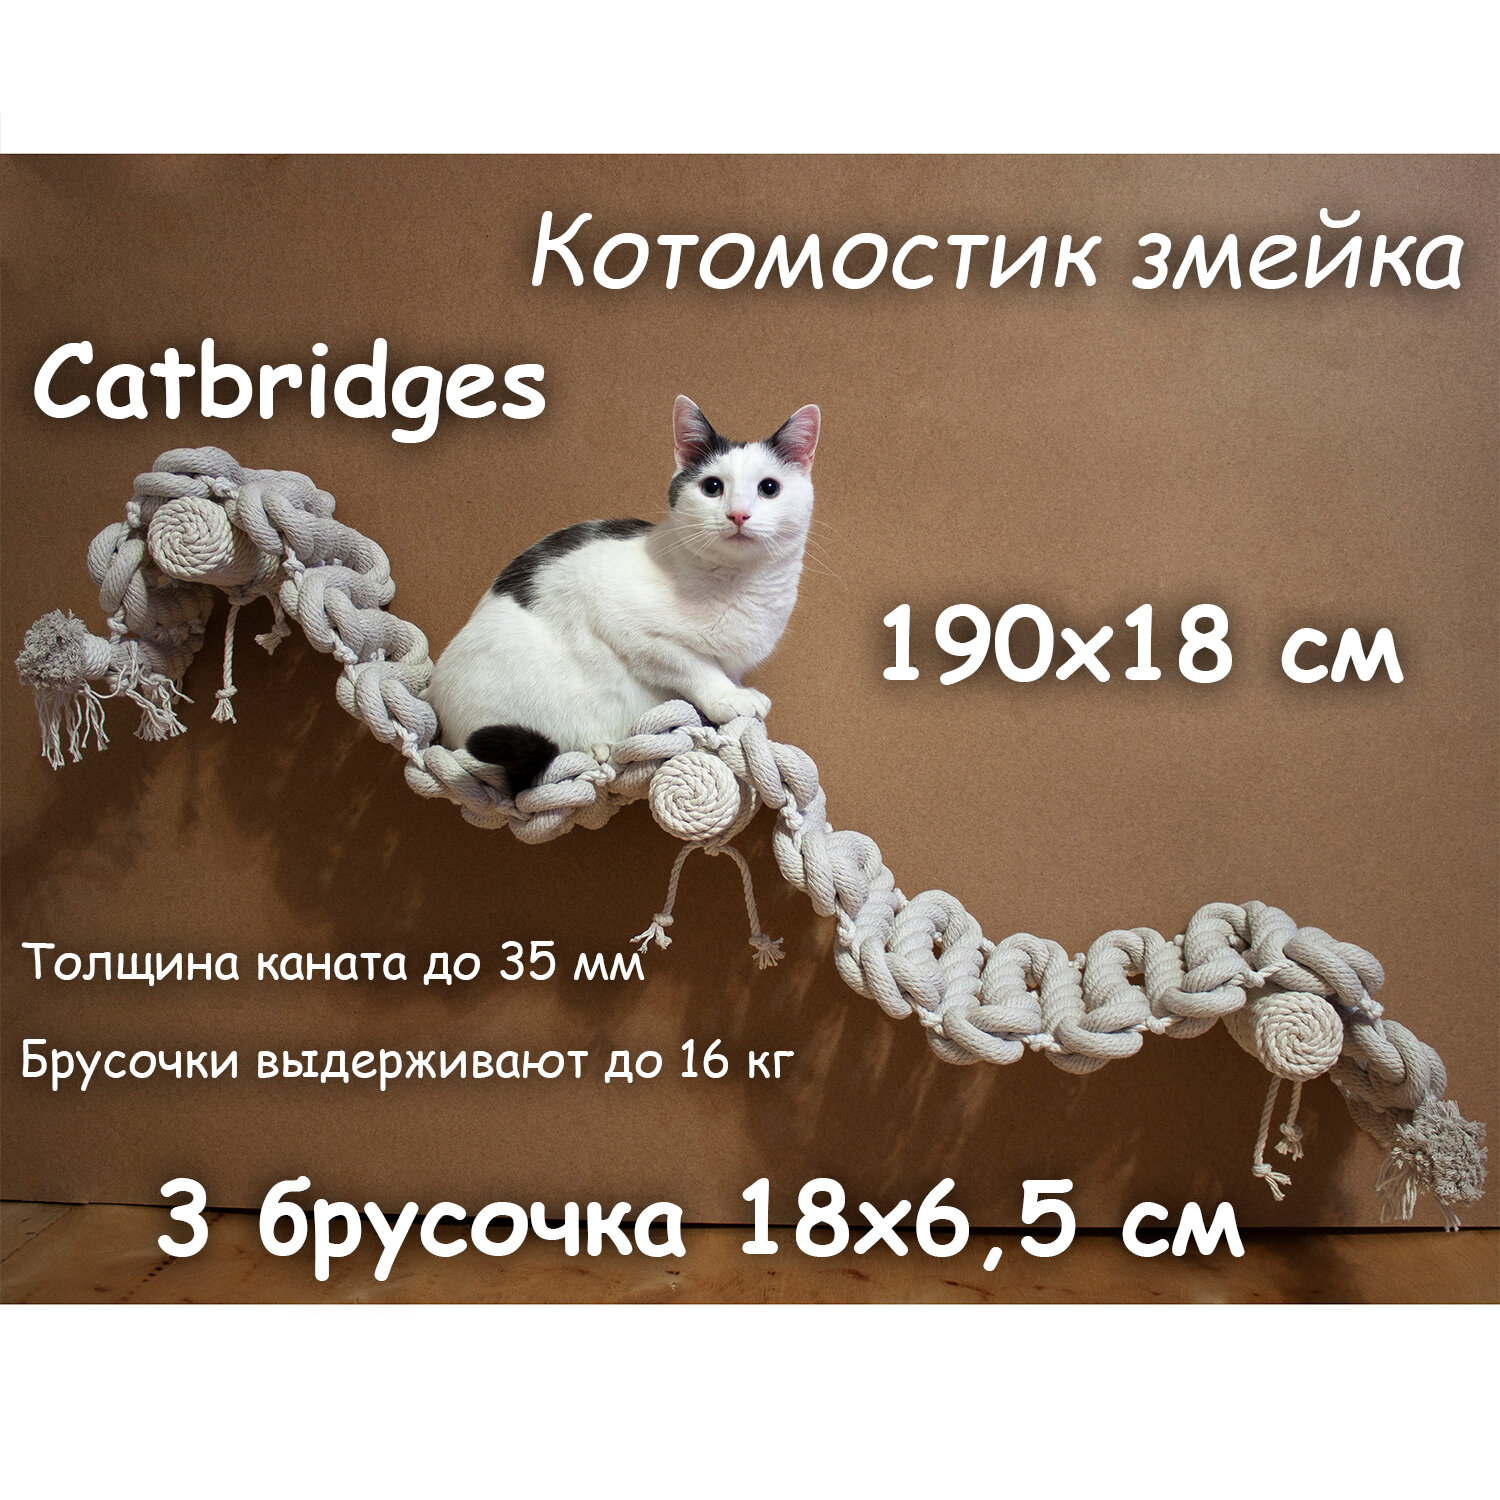 Когтеточка для кошки из хлопка . 190х18 см, 3 брусочка . канат 32 мм, шпилька 8 мм . Котомостик Змейка от Catbridges . Белый . Лежанка .